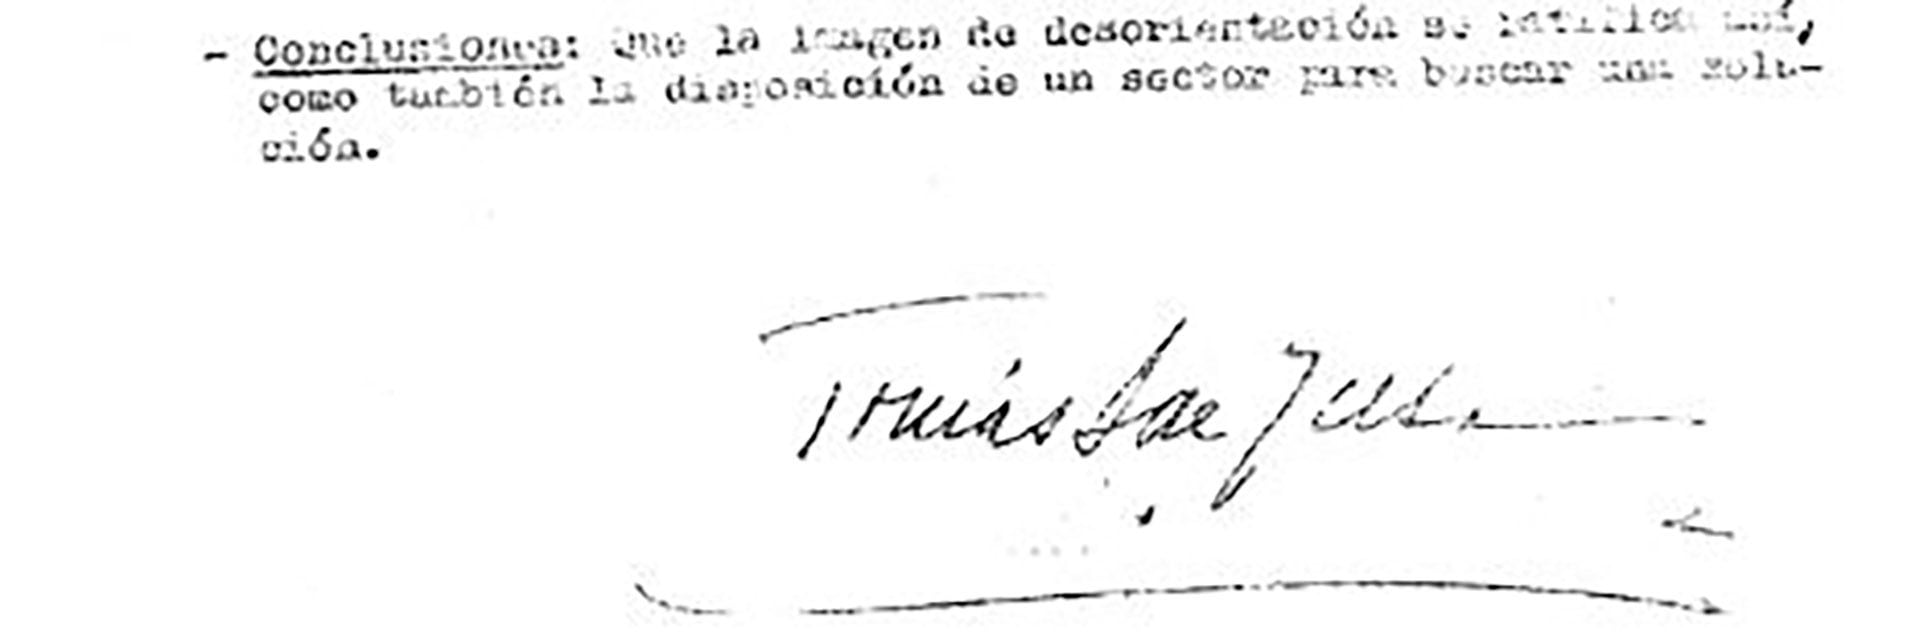 Párrafo final y firma de Sánchez de Bustamante